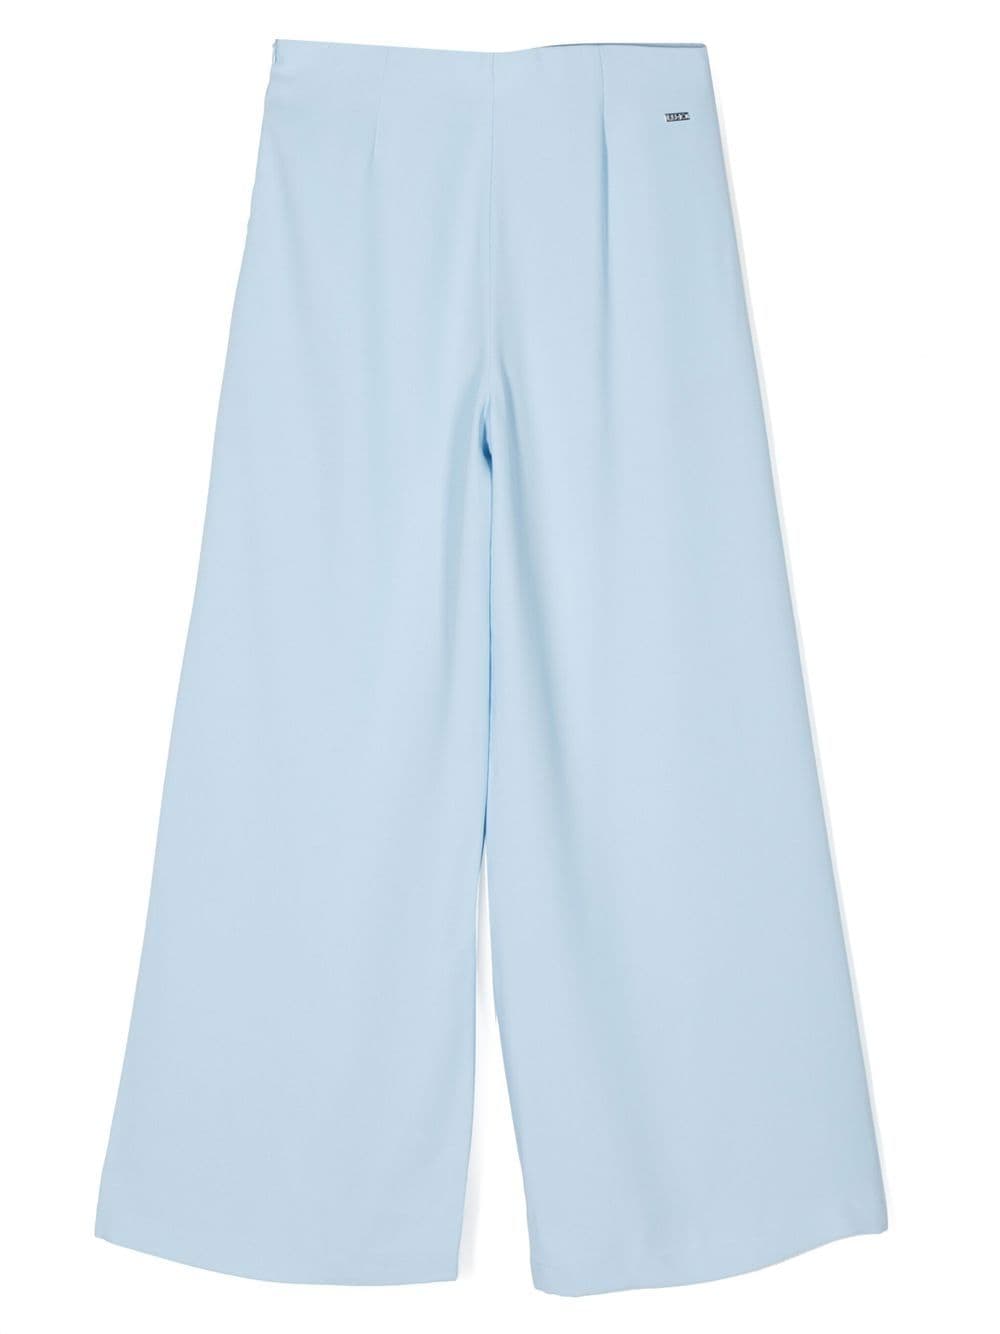 Light blue trousers for girls